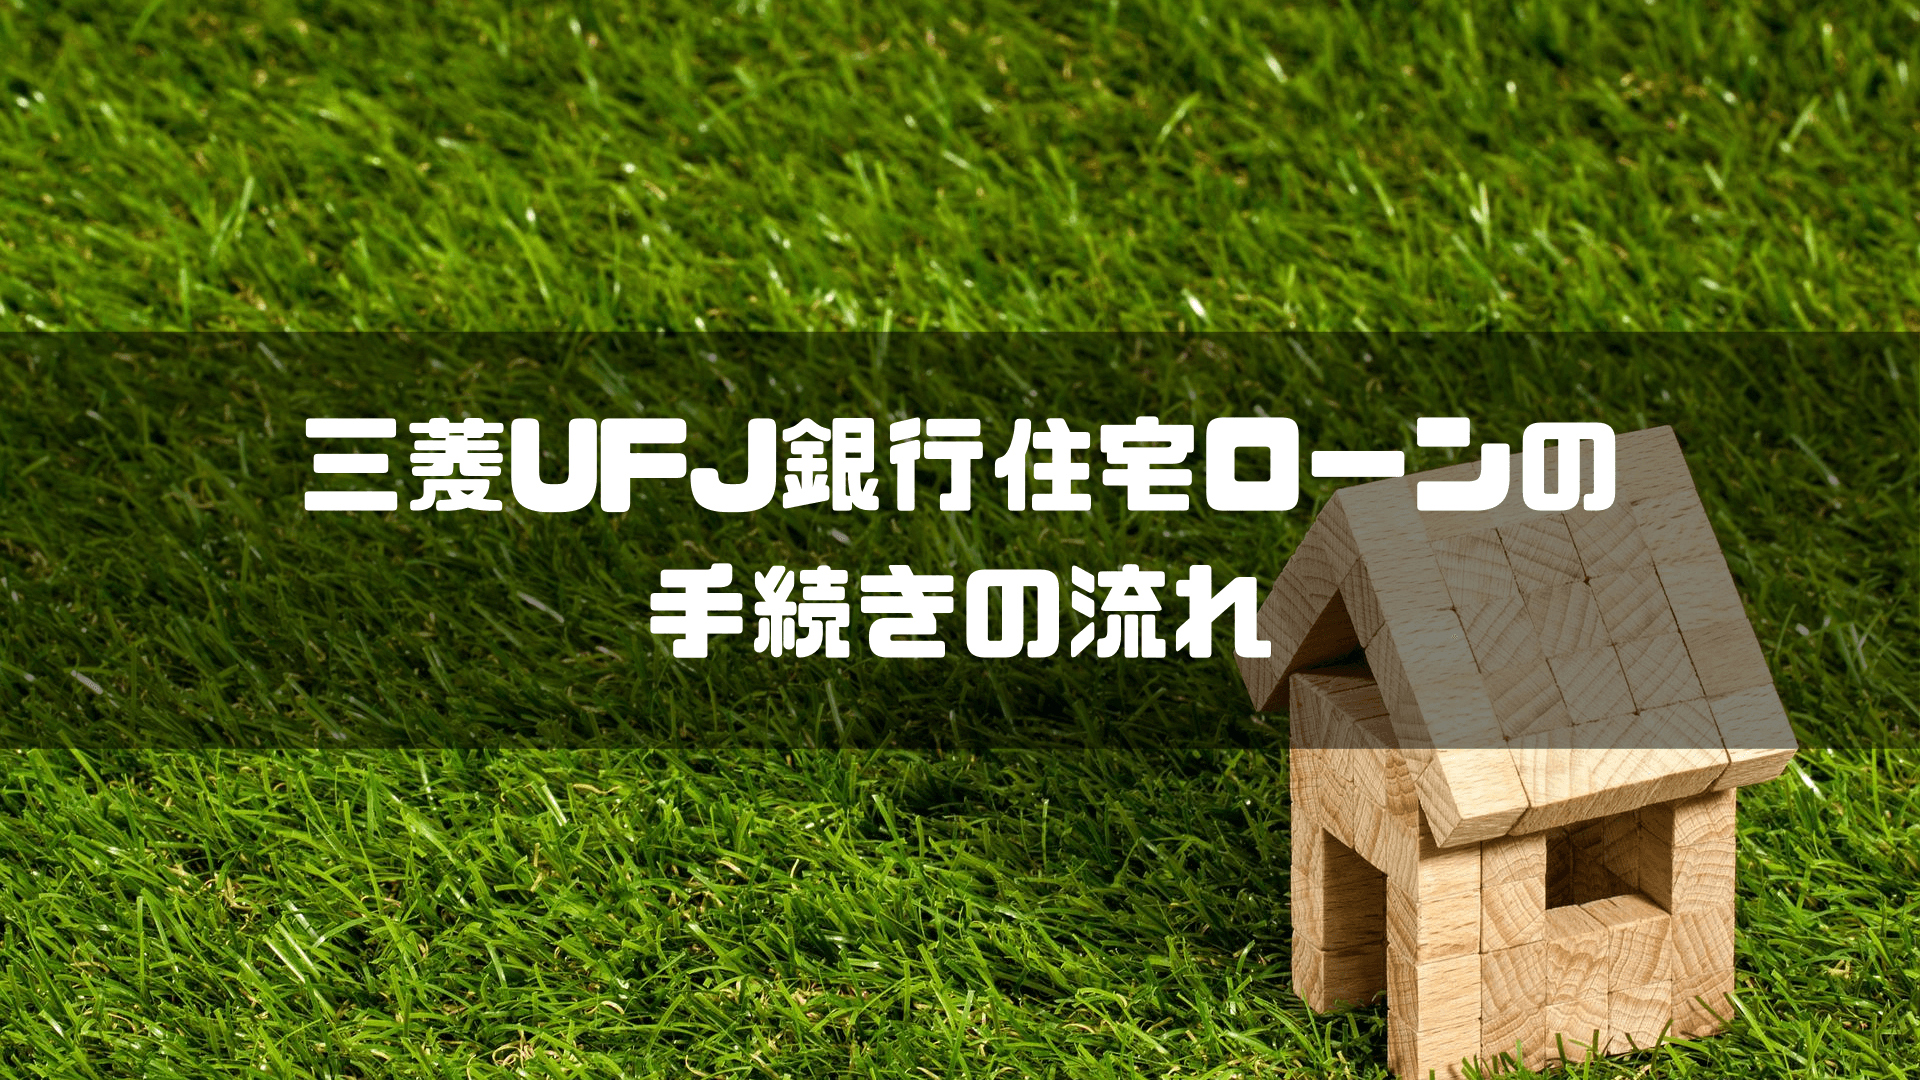 三菱UFJ銀行住宅ローンの手続きの流れ